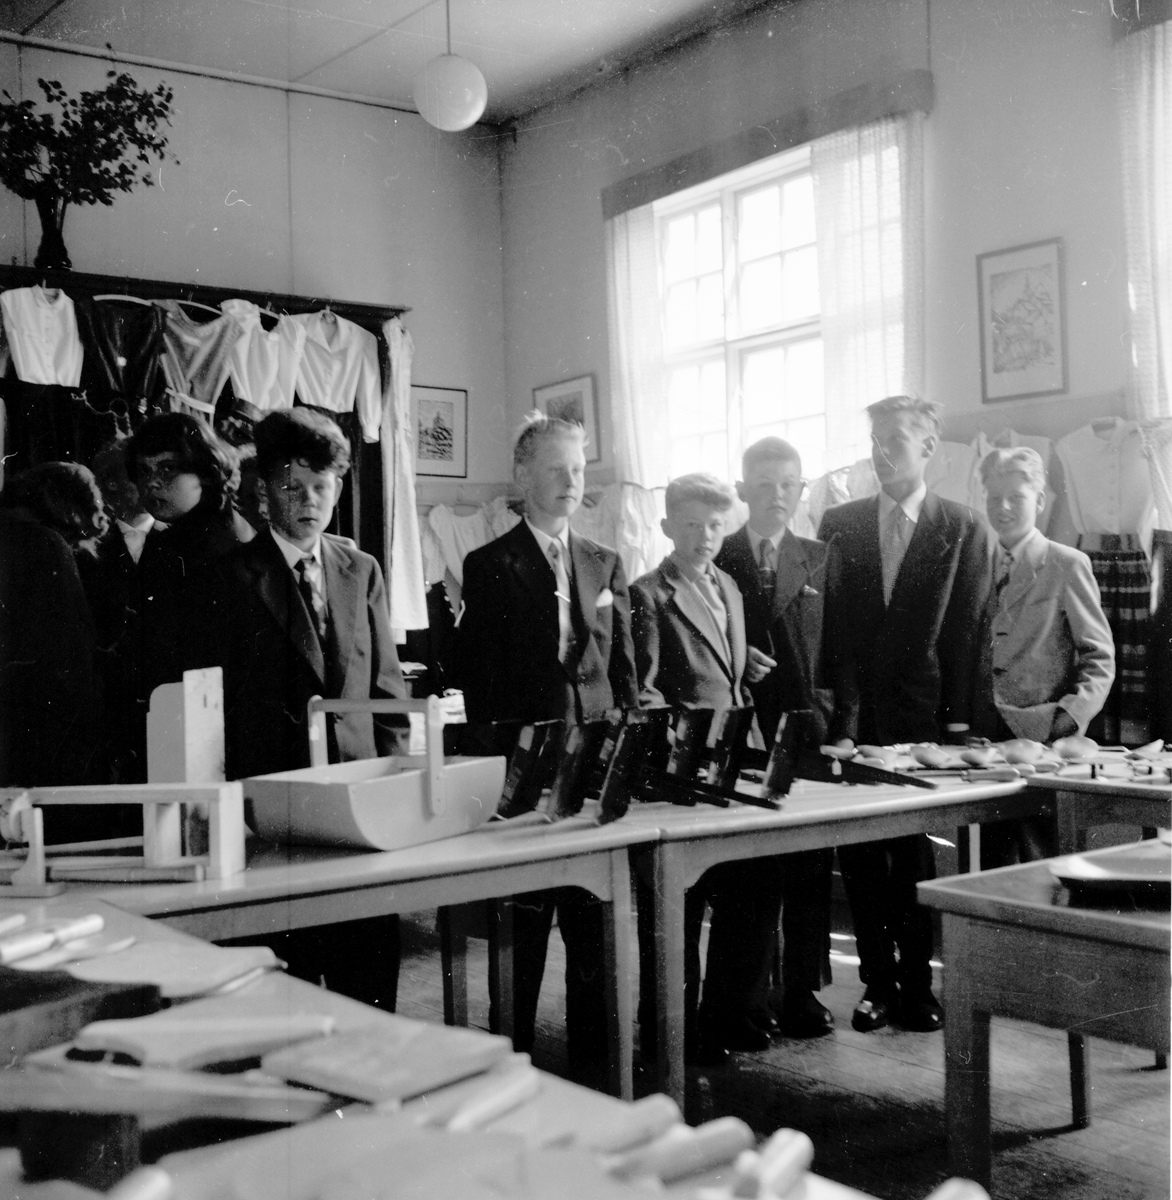 Skolavslutning i landskommunen.
1955